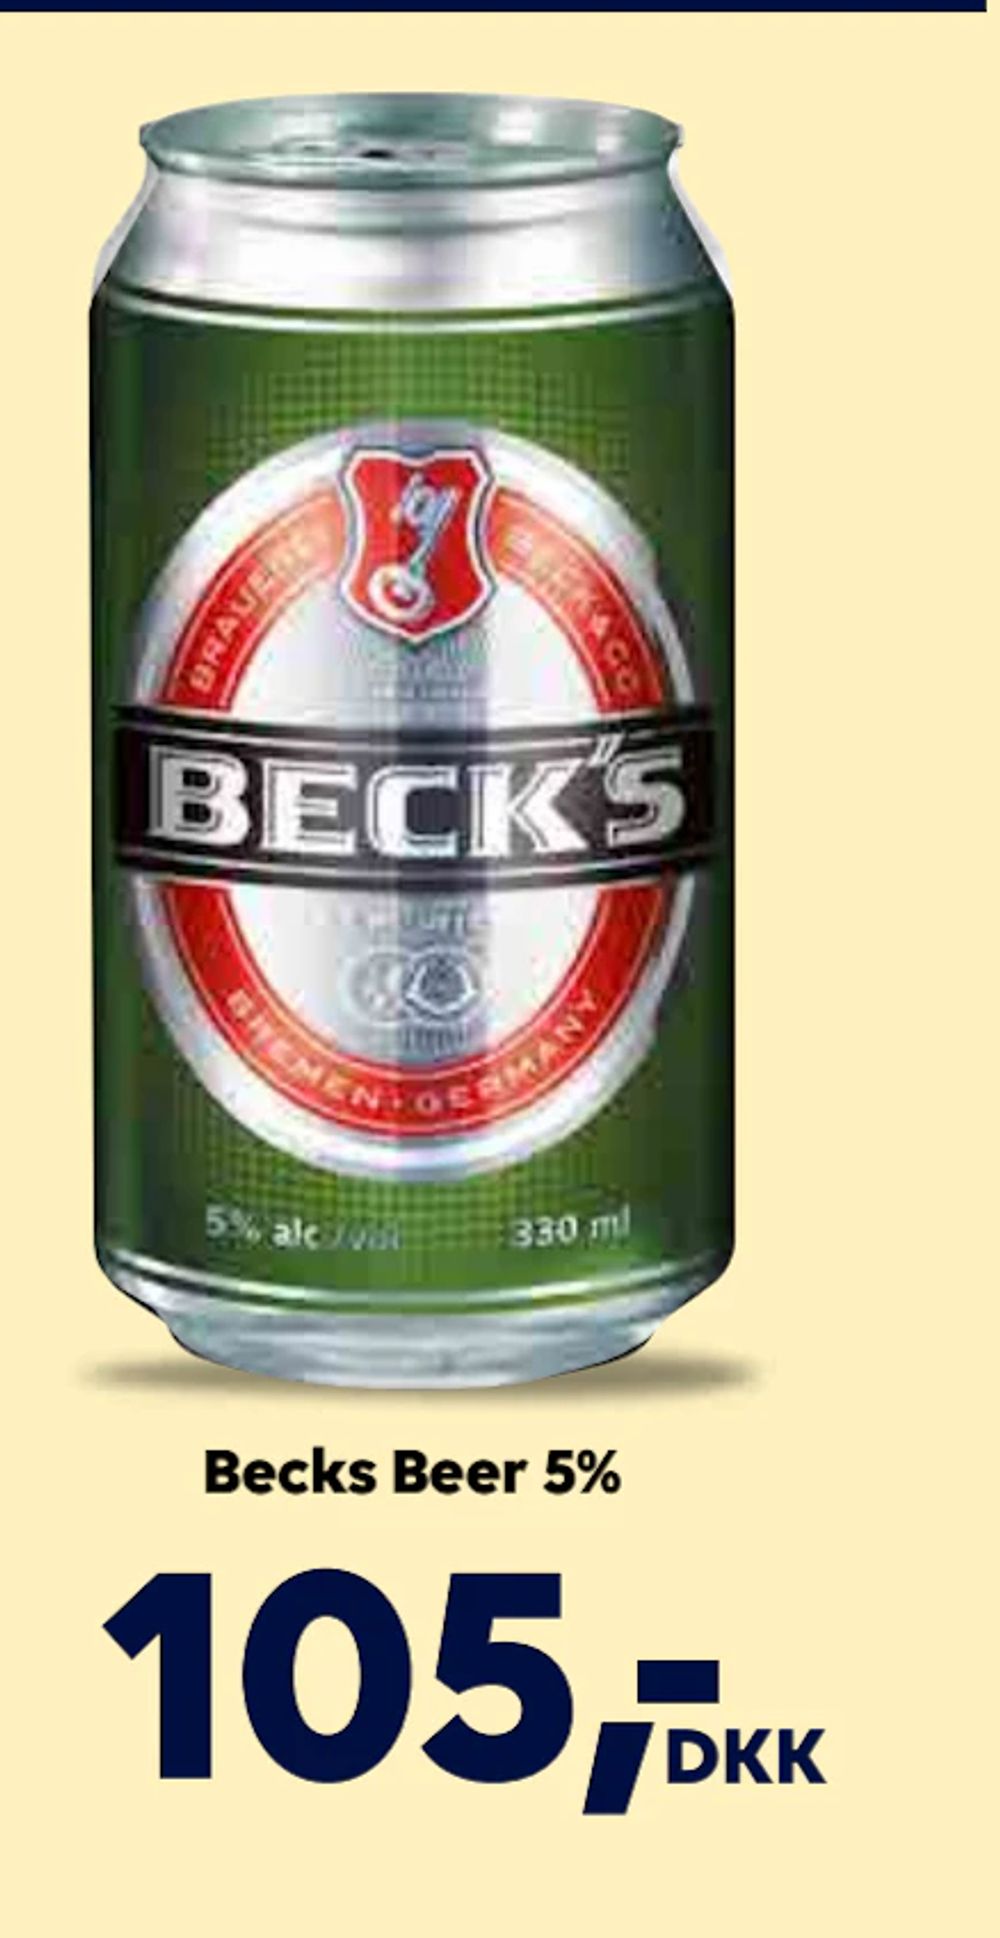 Tilbud på Becks Beer 5% fra BorderShop til 105 kr.